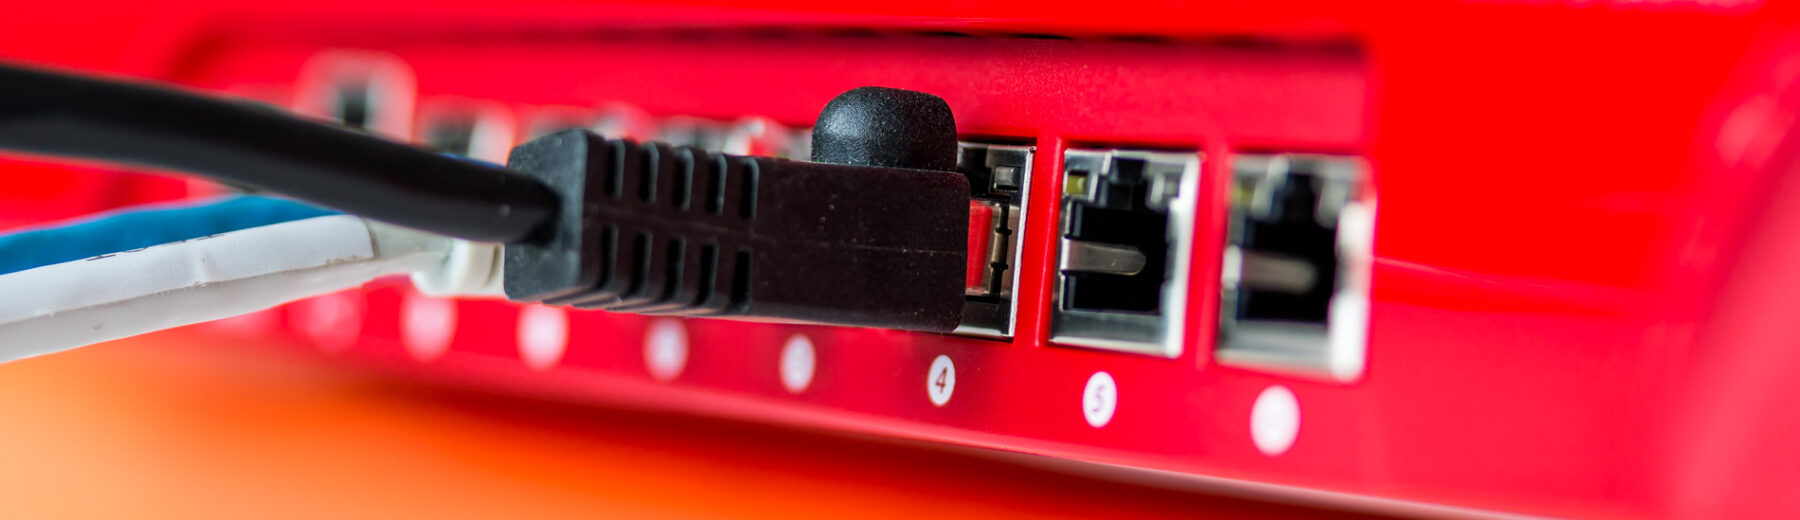 Nätkabel inkopplad i röd router